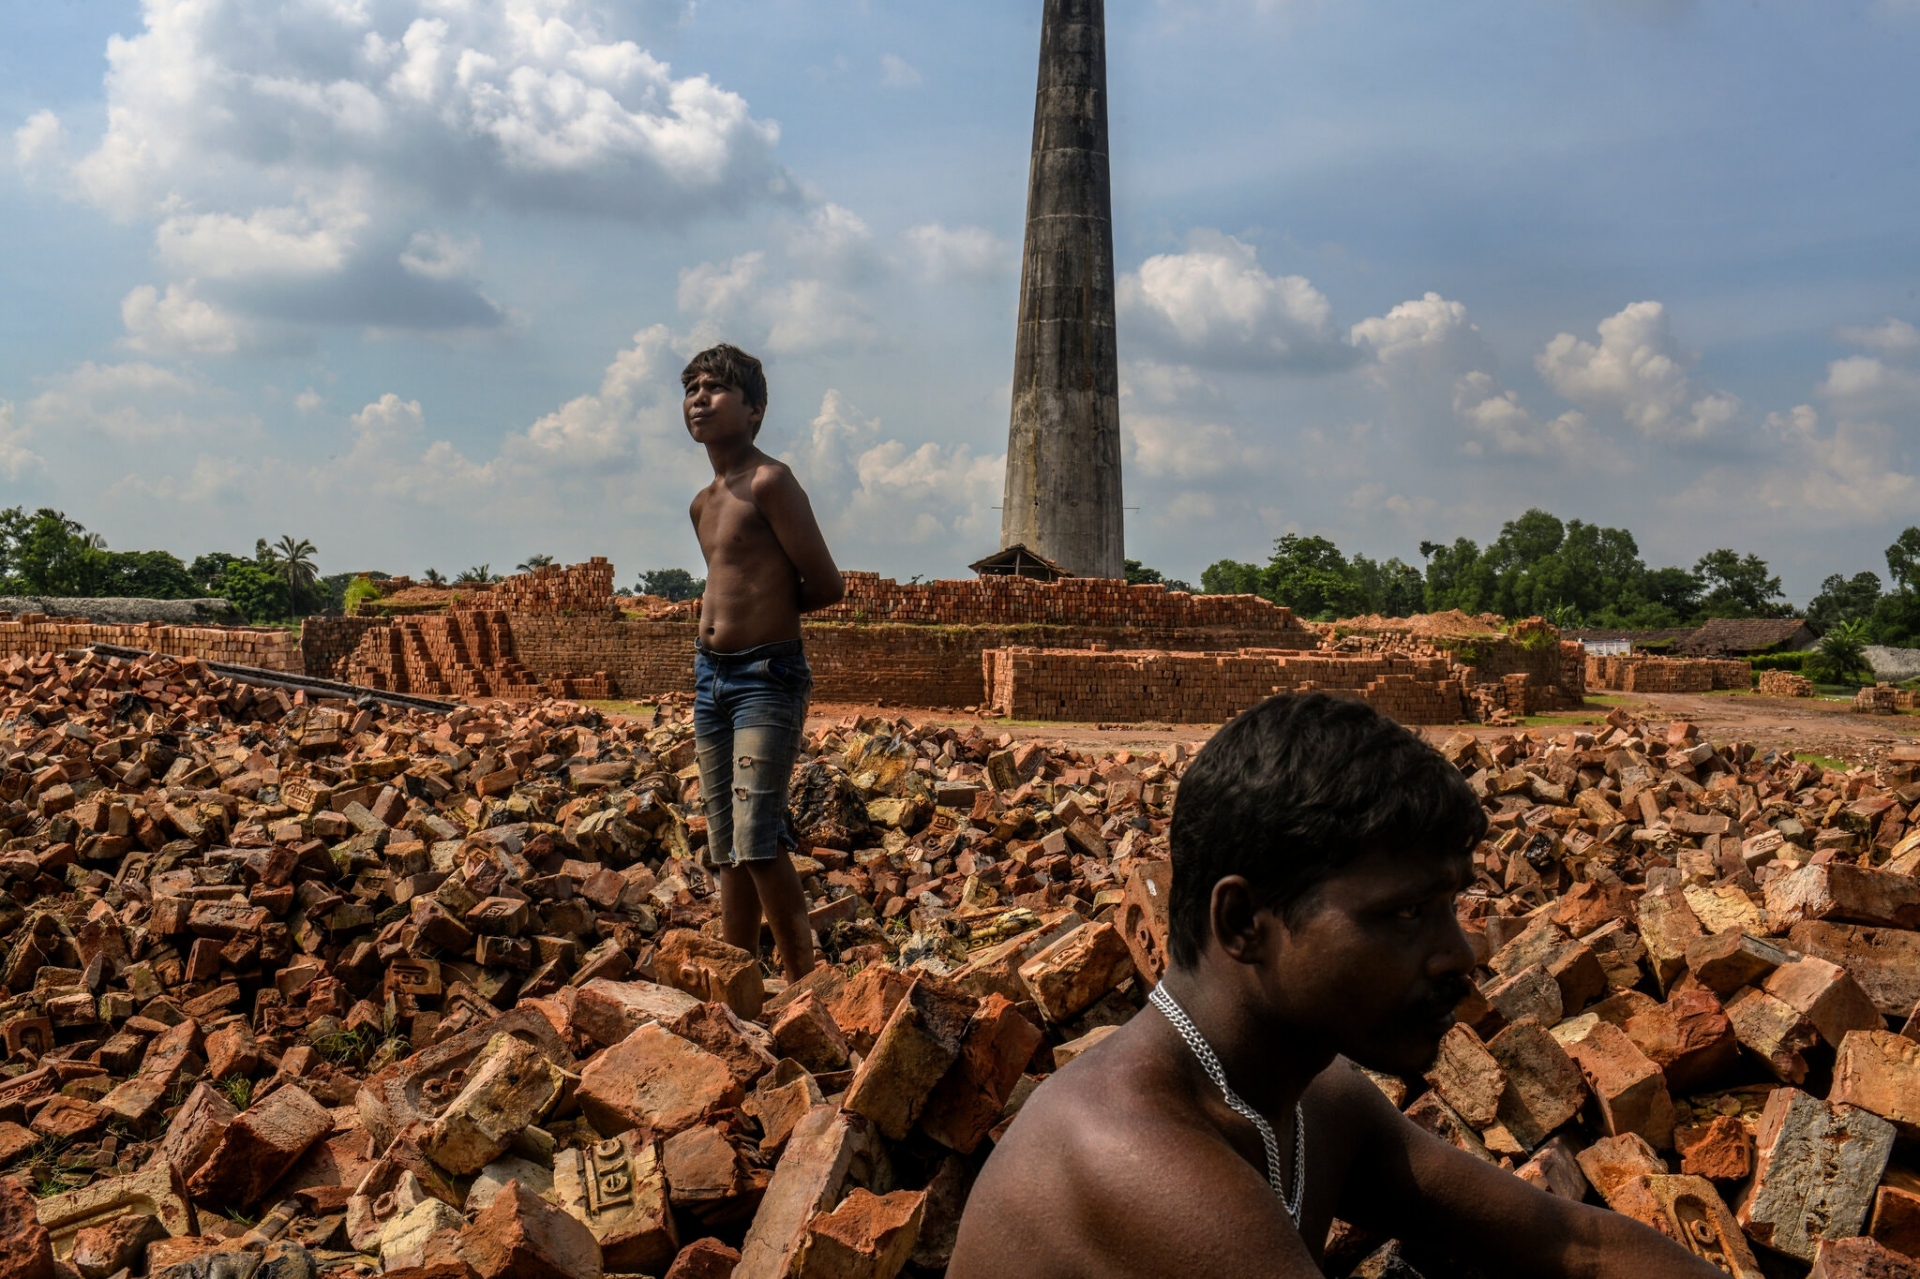 Suman Das, 13 tuổi, cùng cha đợi một chiếc xe tải đến để họ có thể chất gạch vào tháng này tại quận North Parganas của Tây Bengal (Một bang của Ấn Độ). Ảnh: The New York Times.